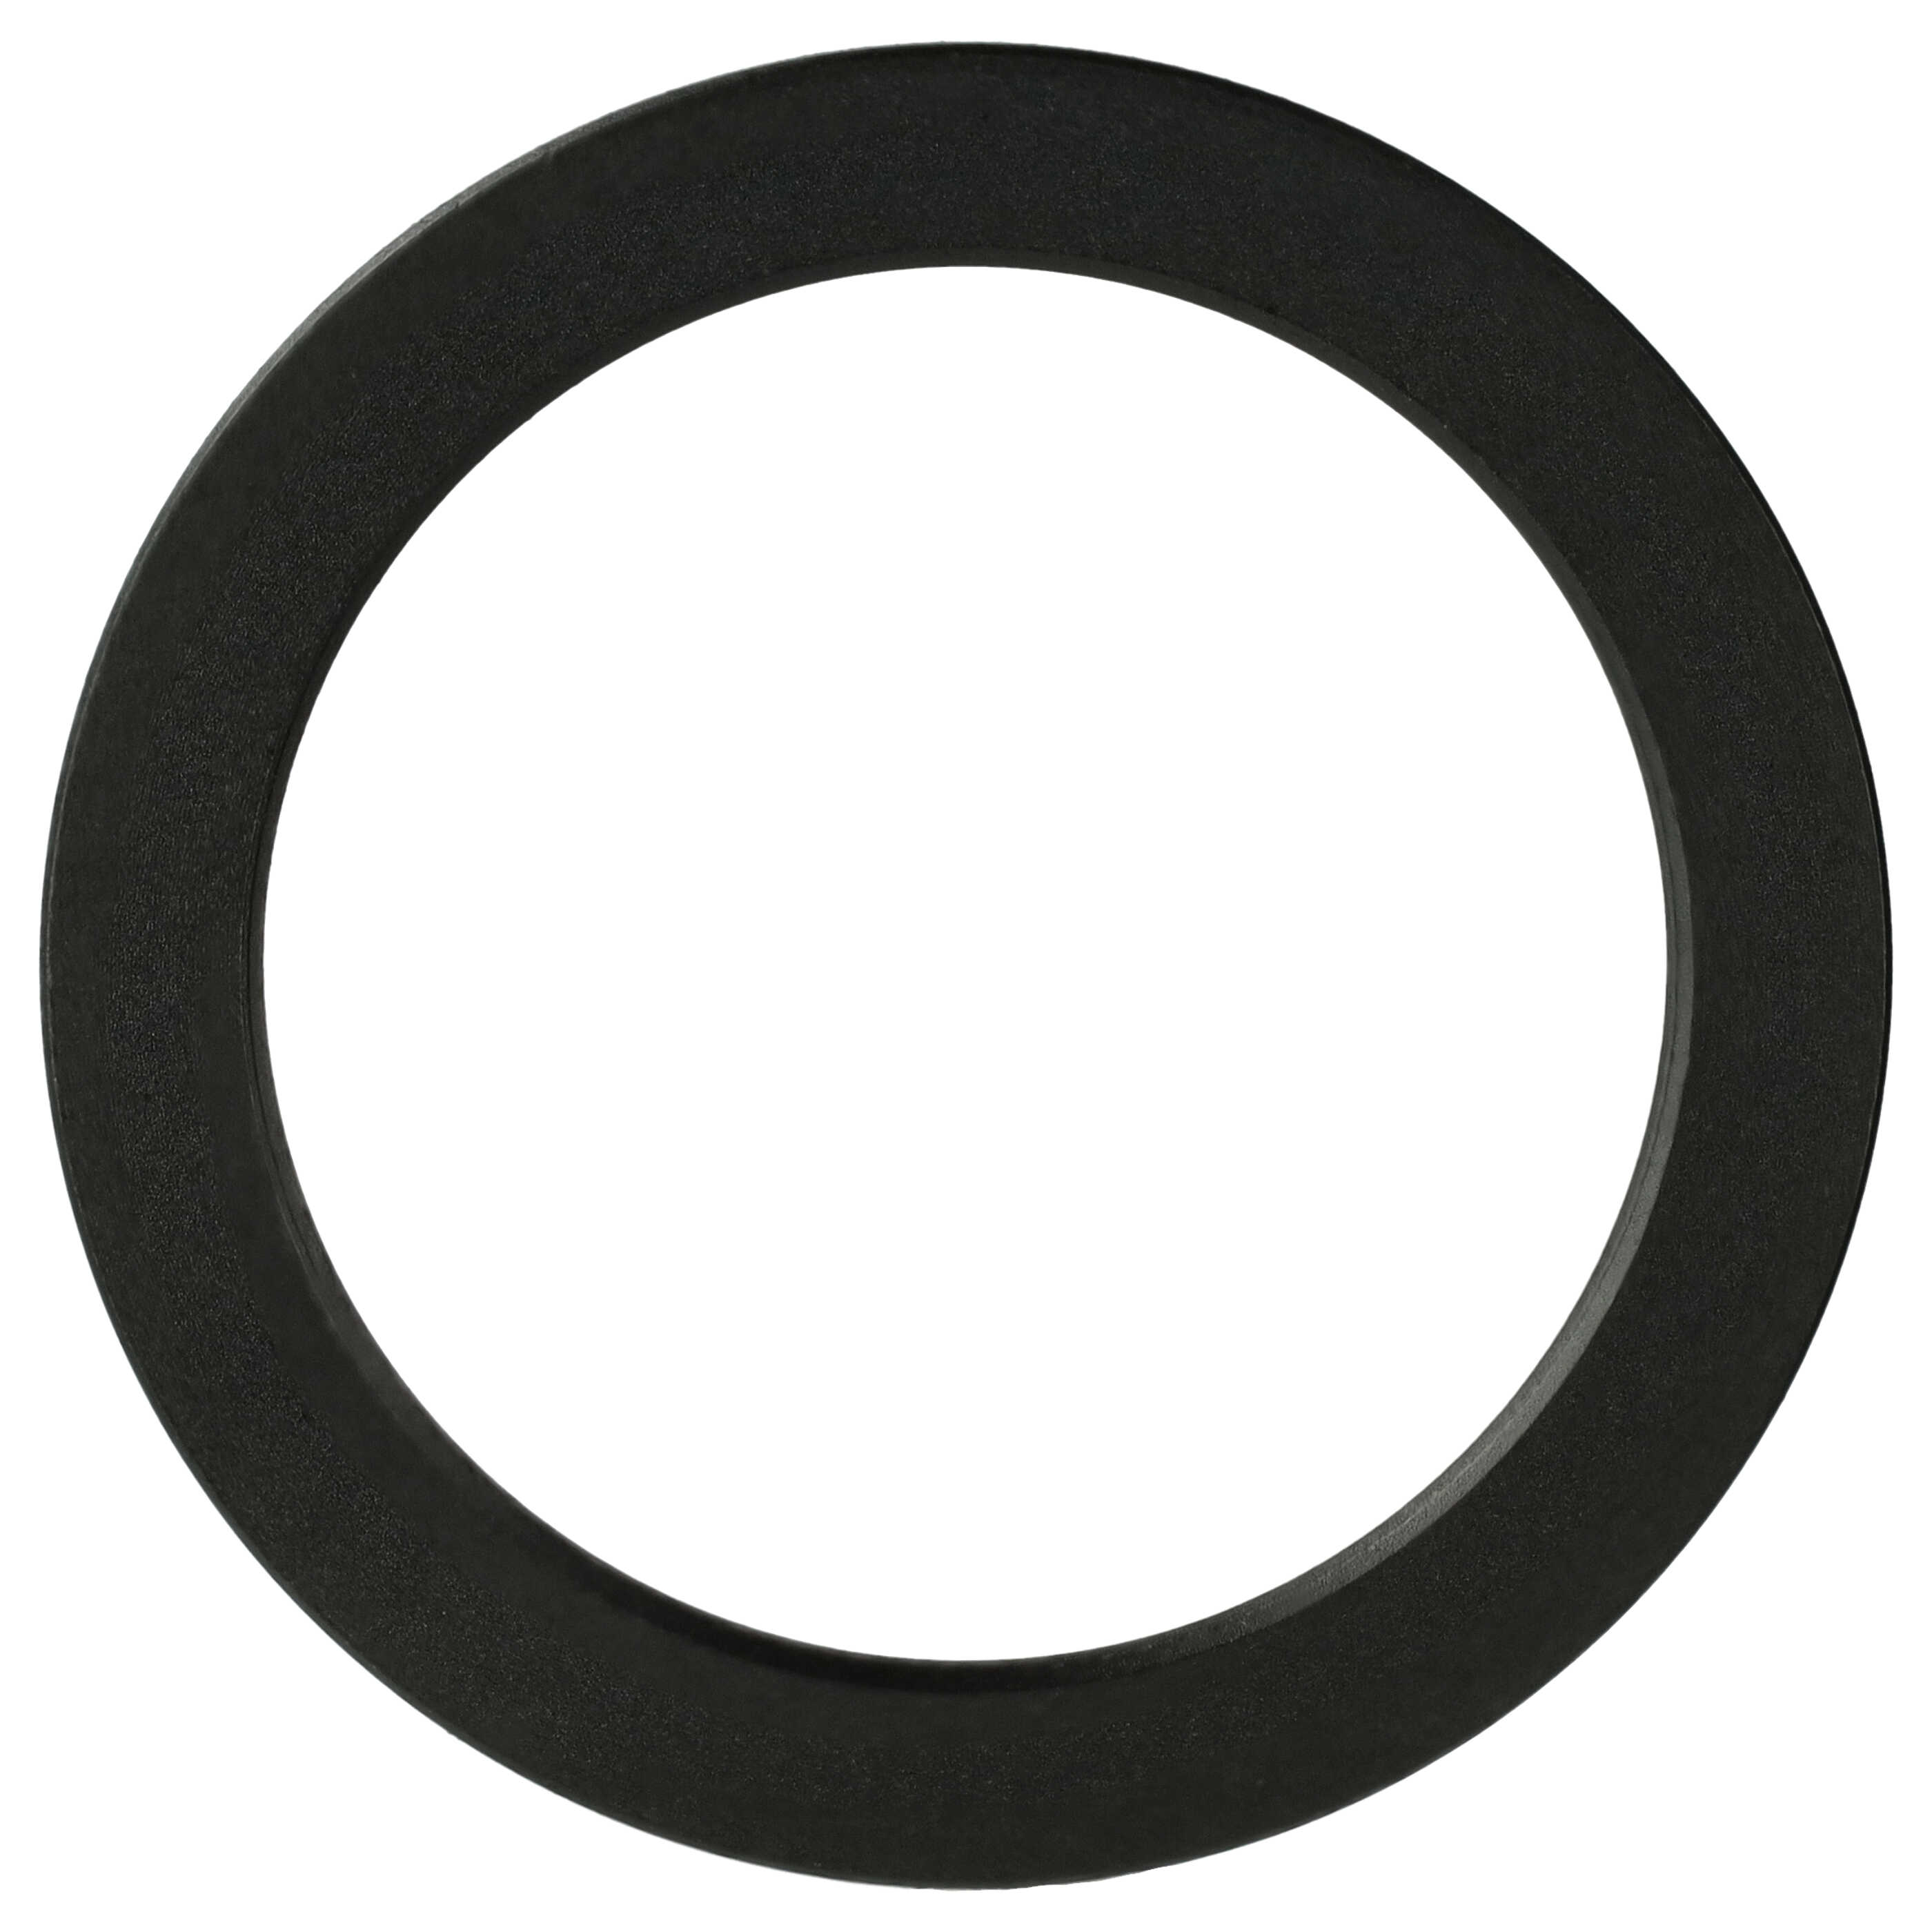 Step-Down-Ring Adapter von 52 mm auf 42 mm passend für Kamera Objektiv - Filteradapter, Metall, schwarz